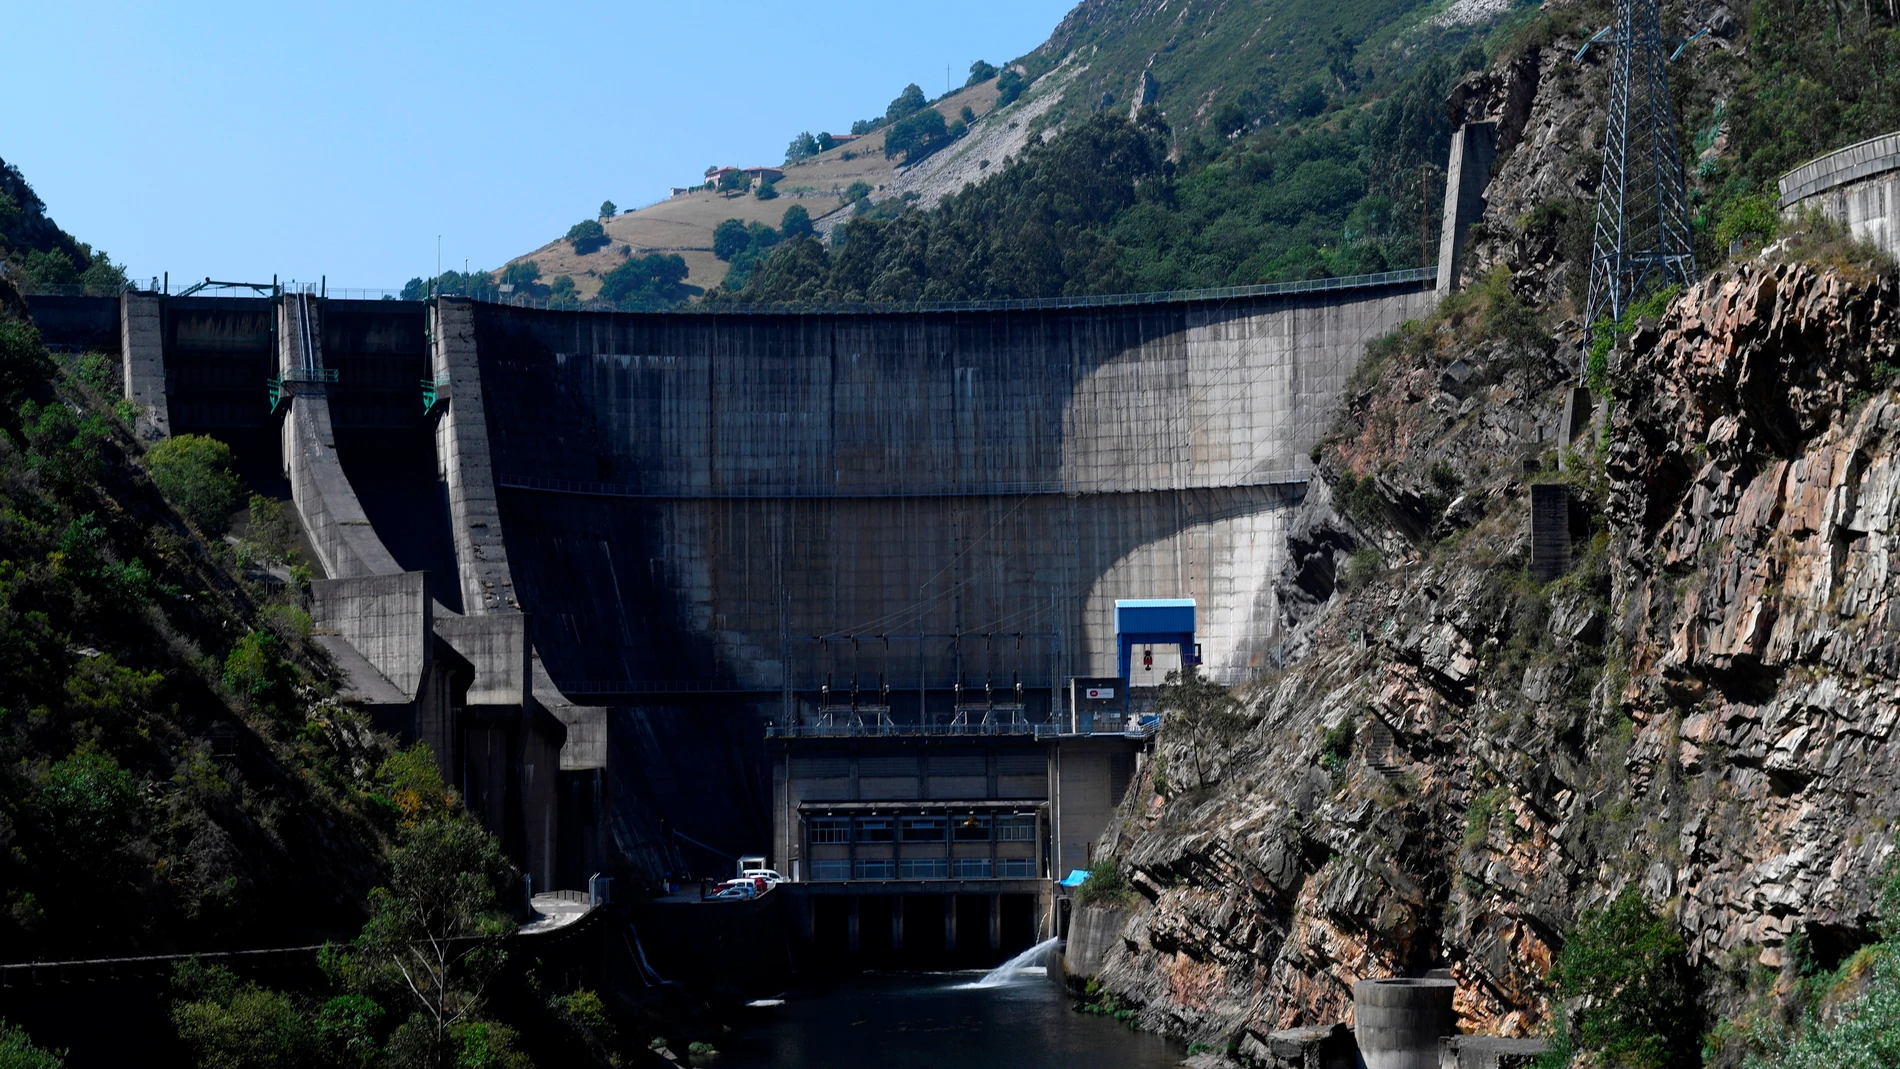 Vistas de los alrededores de una central hidroeléctrica